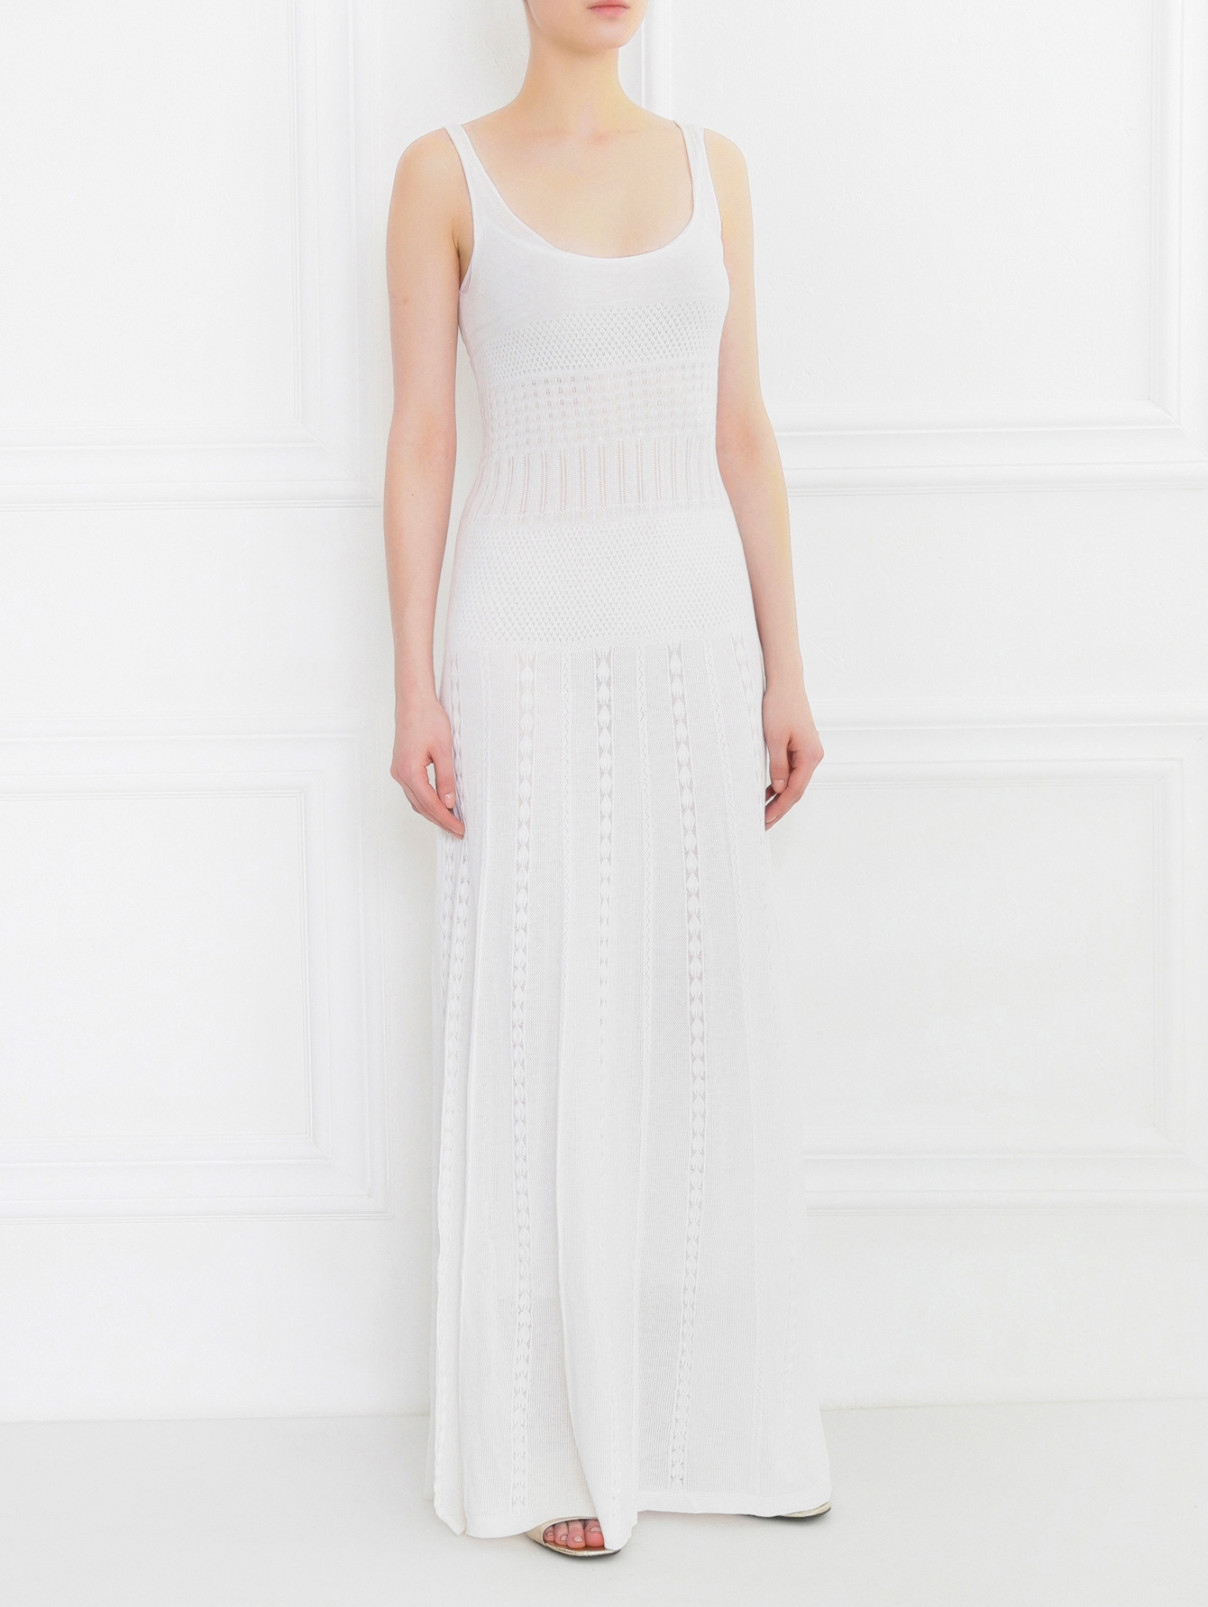 Платье из трикотажа ажурной вязки Alberta Ferretti  –  Модель Общий вид  – Цвет:  Белый